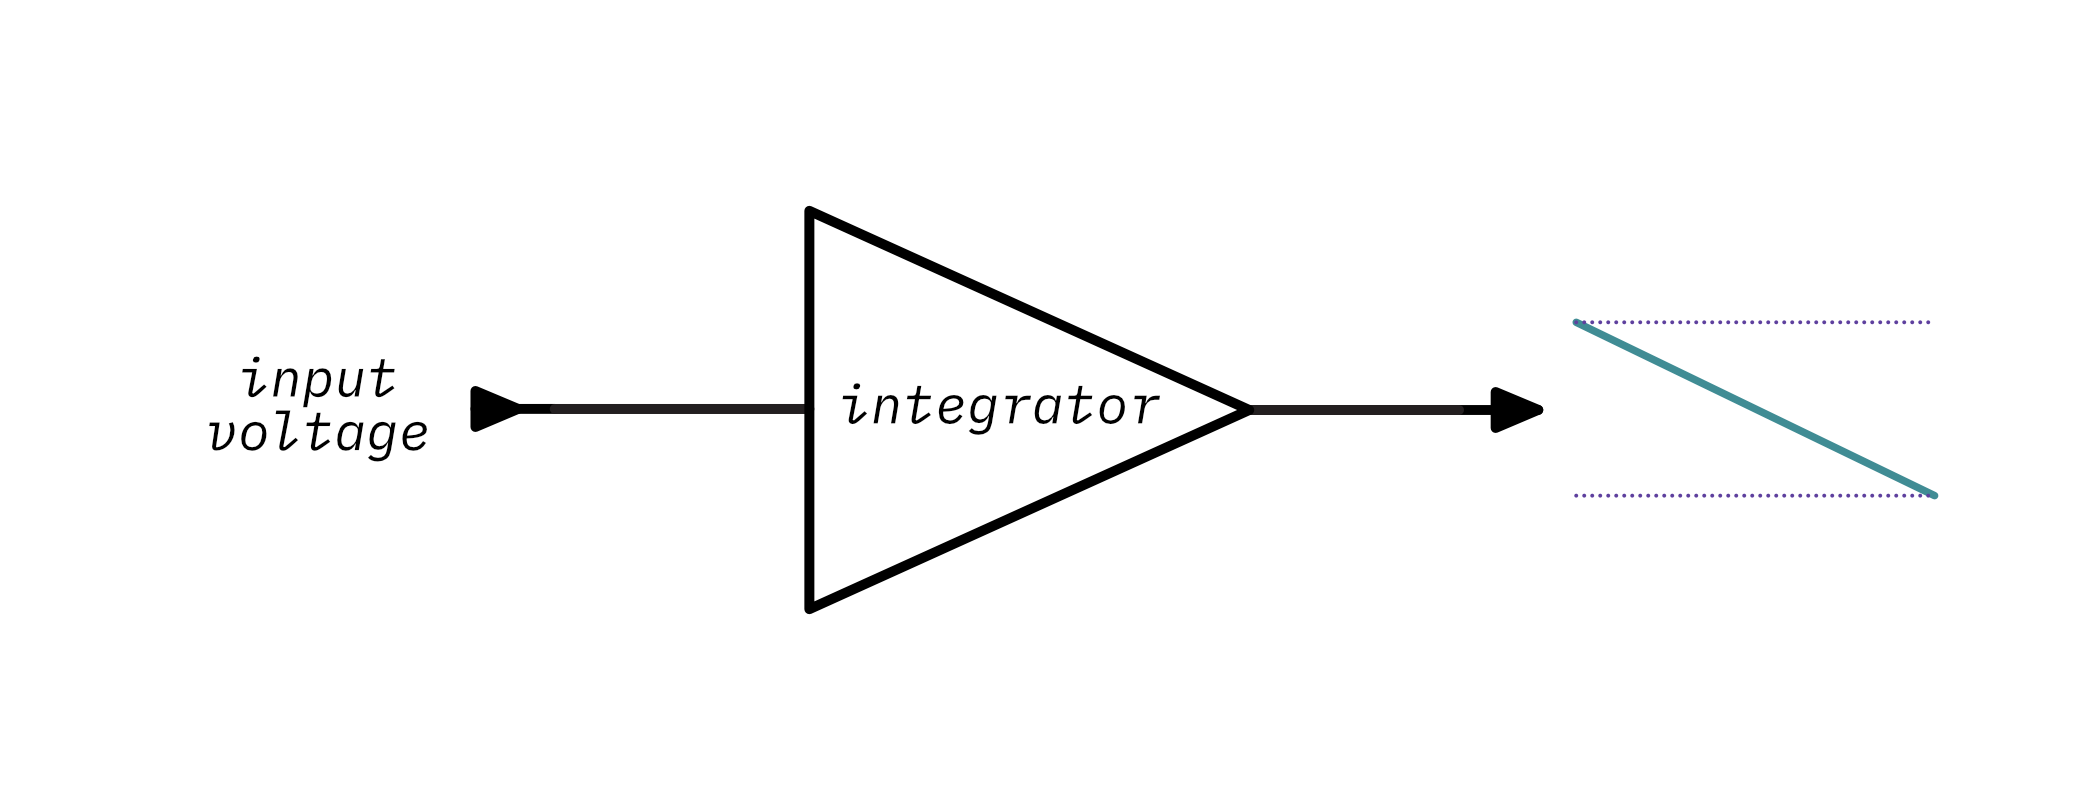 An ideal integrator